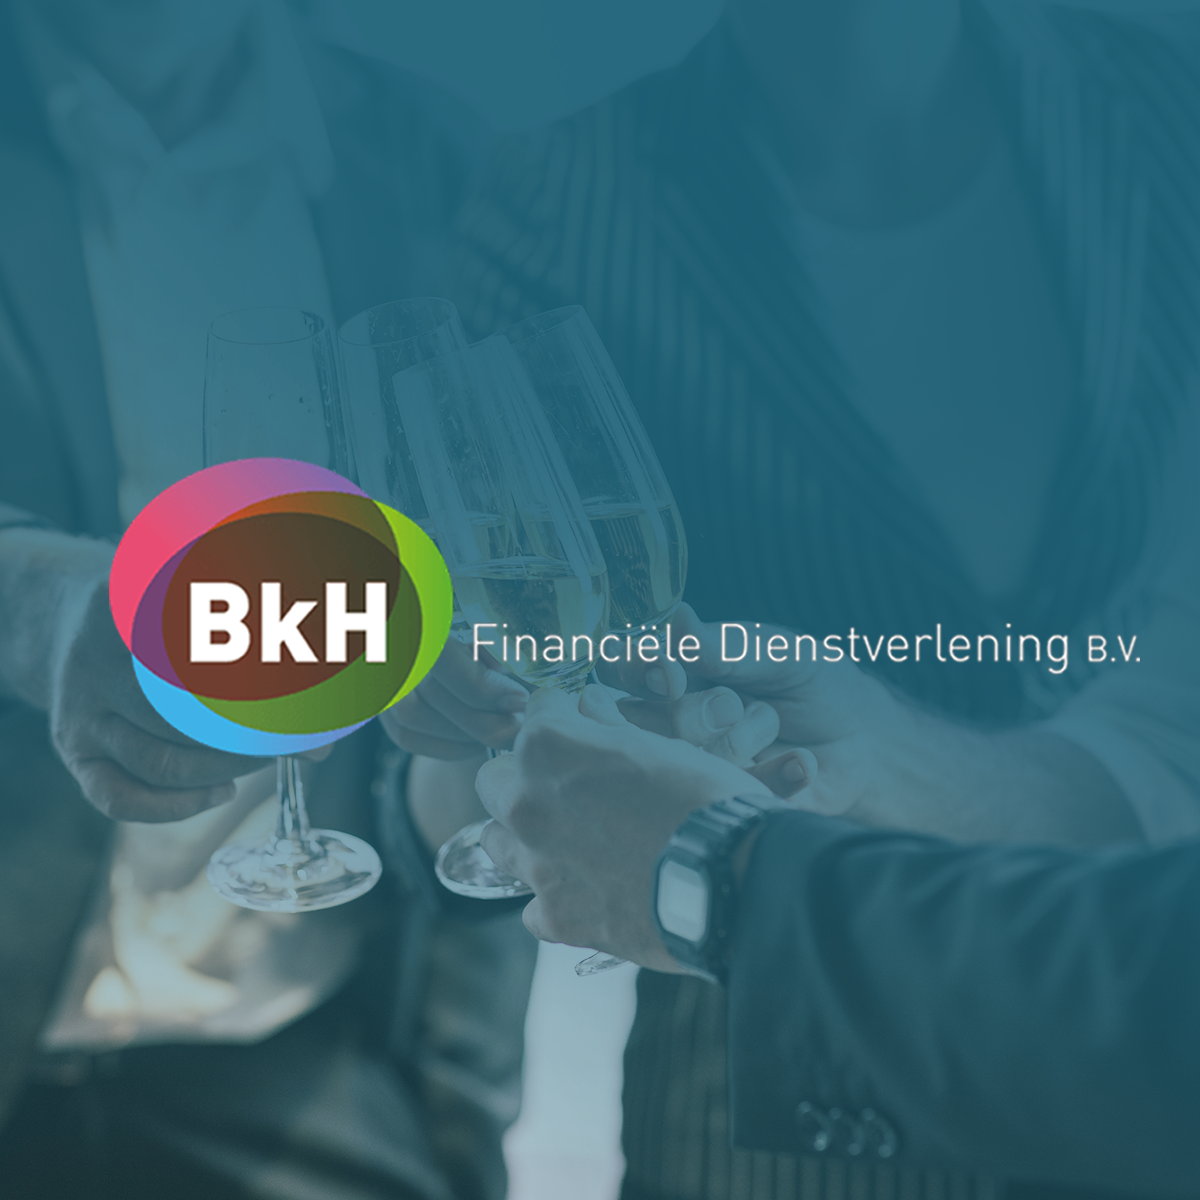 BkH Financiële Dienstverlening sluit aan bij Zwanenberg Advies